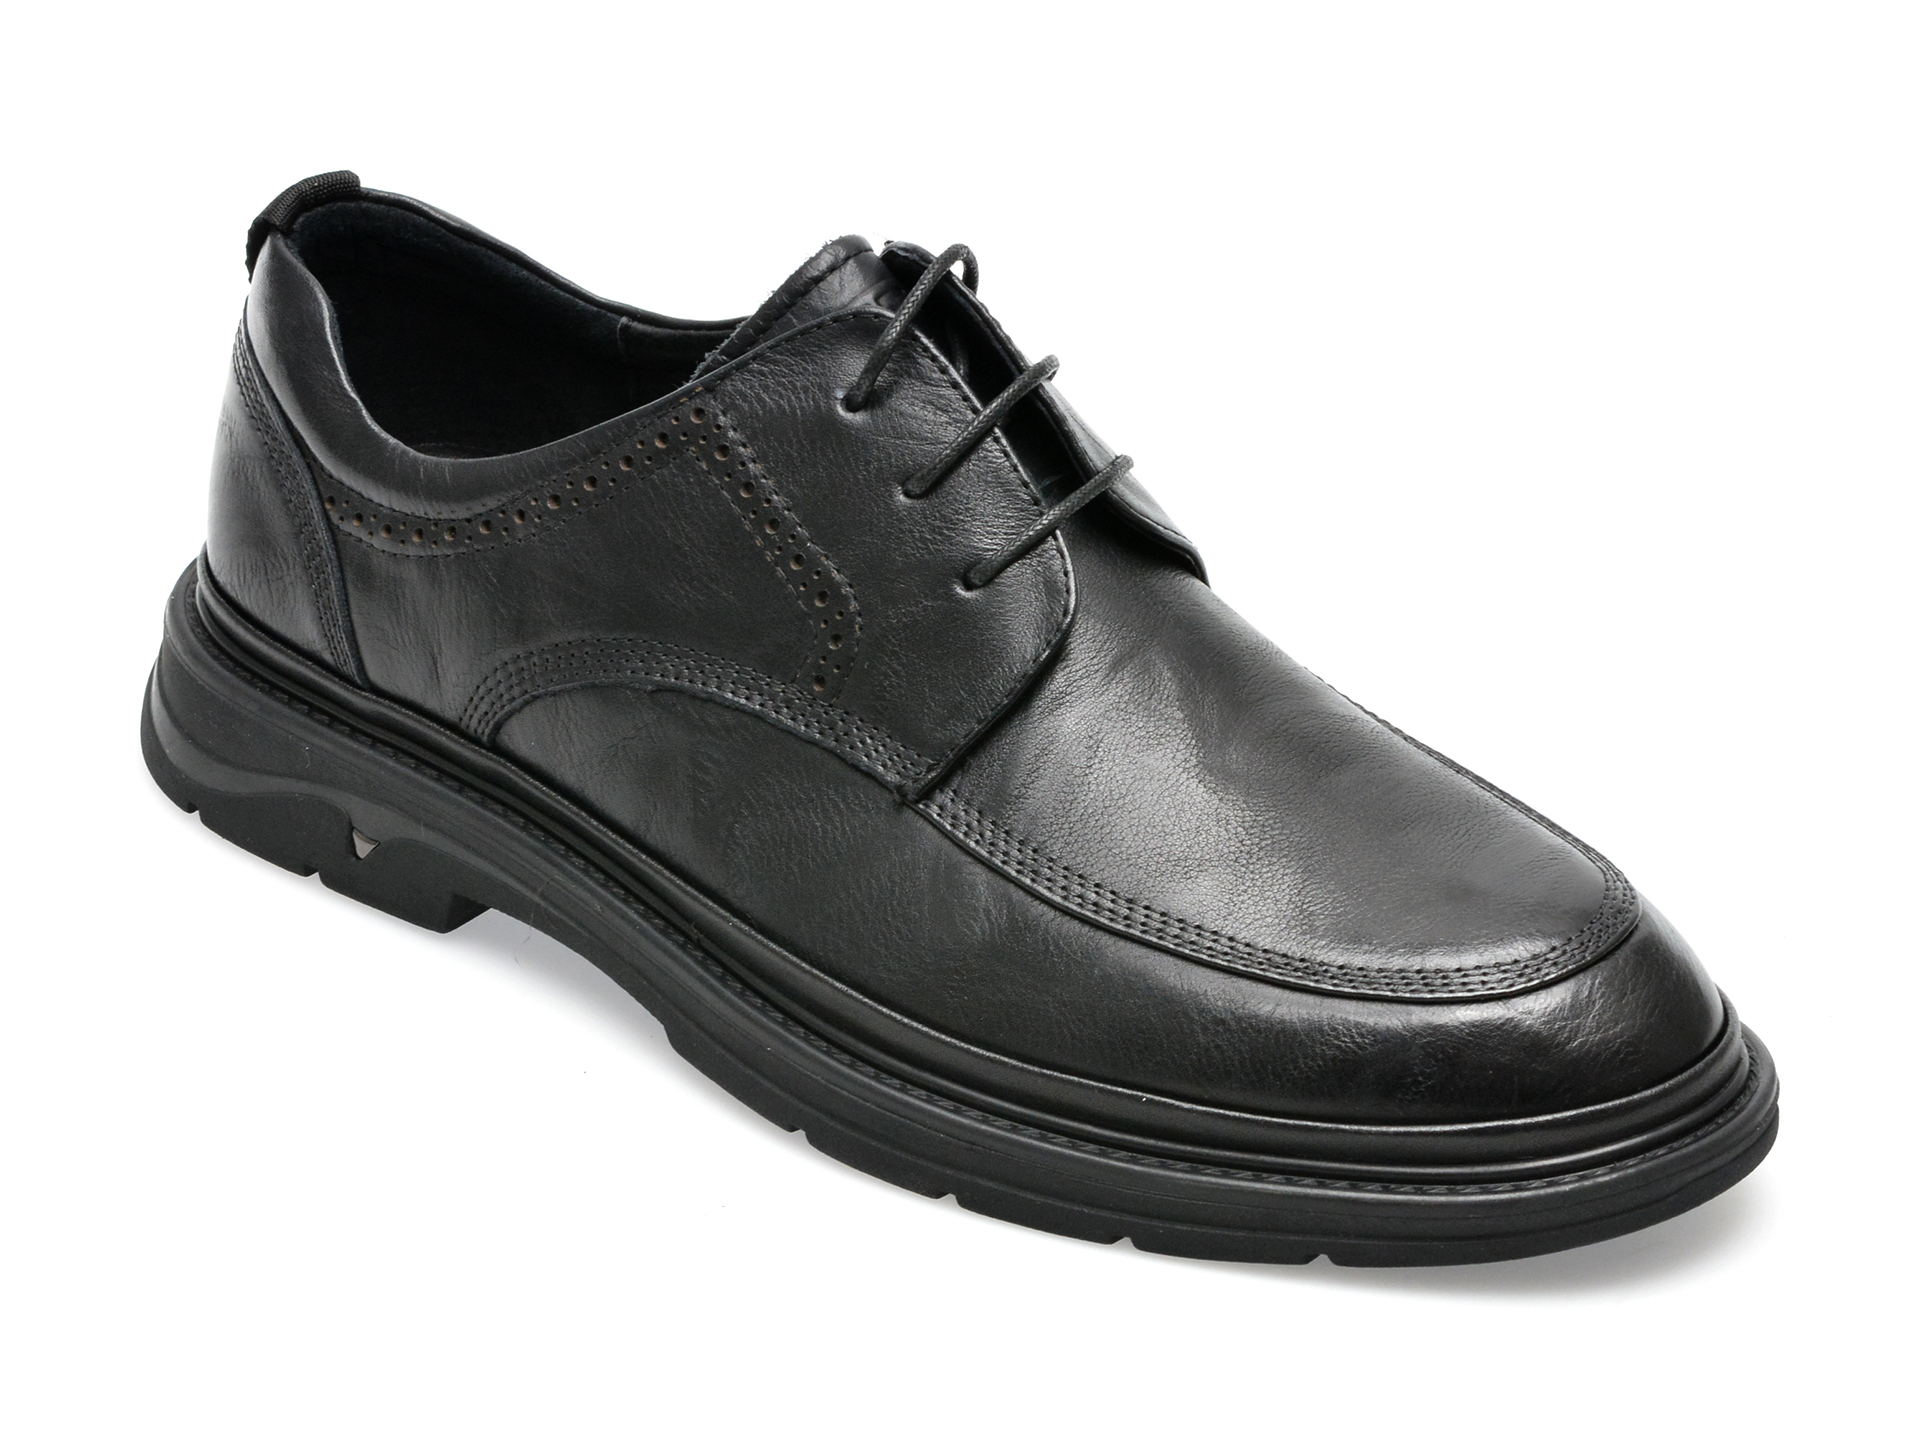 Poze Pantofi OTTER negri, E620005, din piele naturala Tezyo